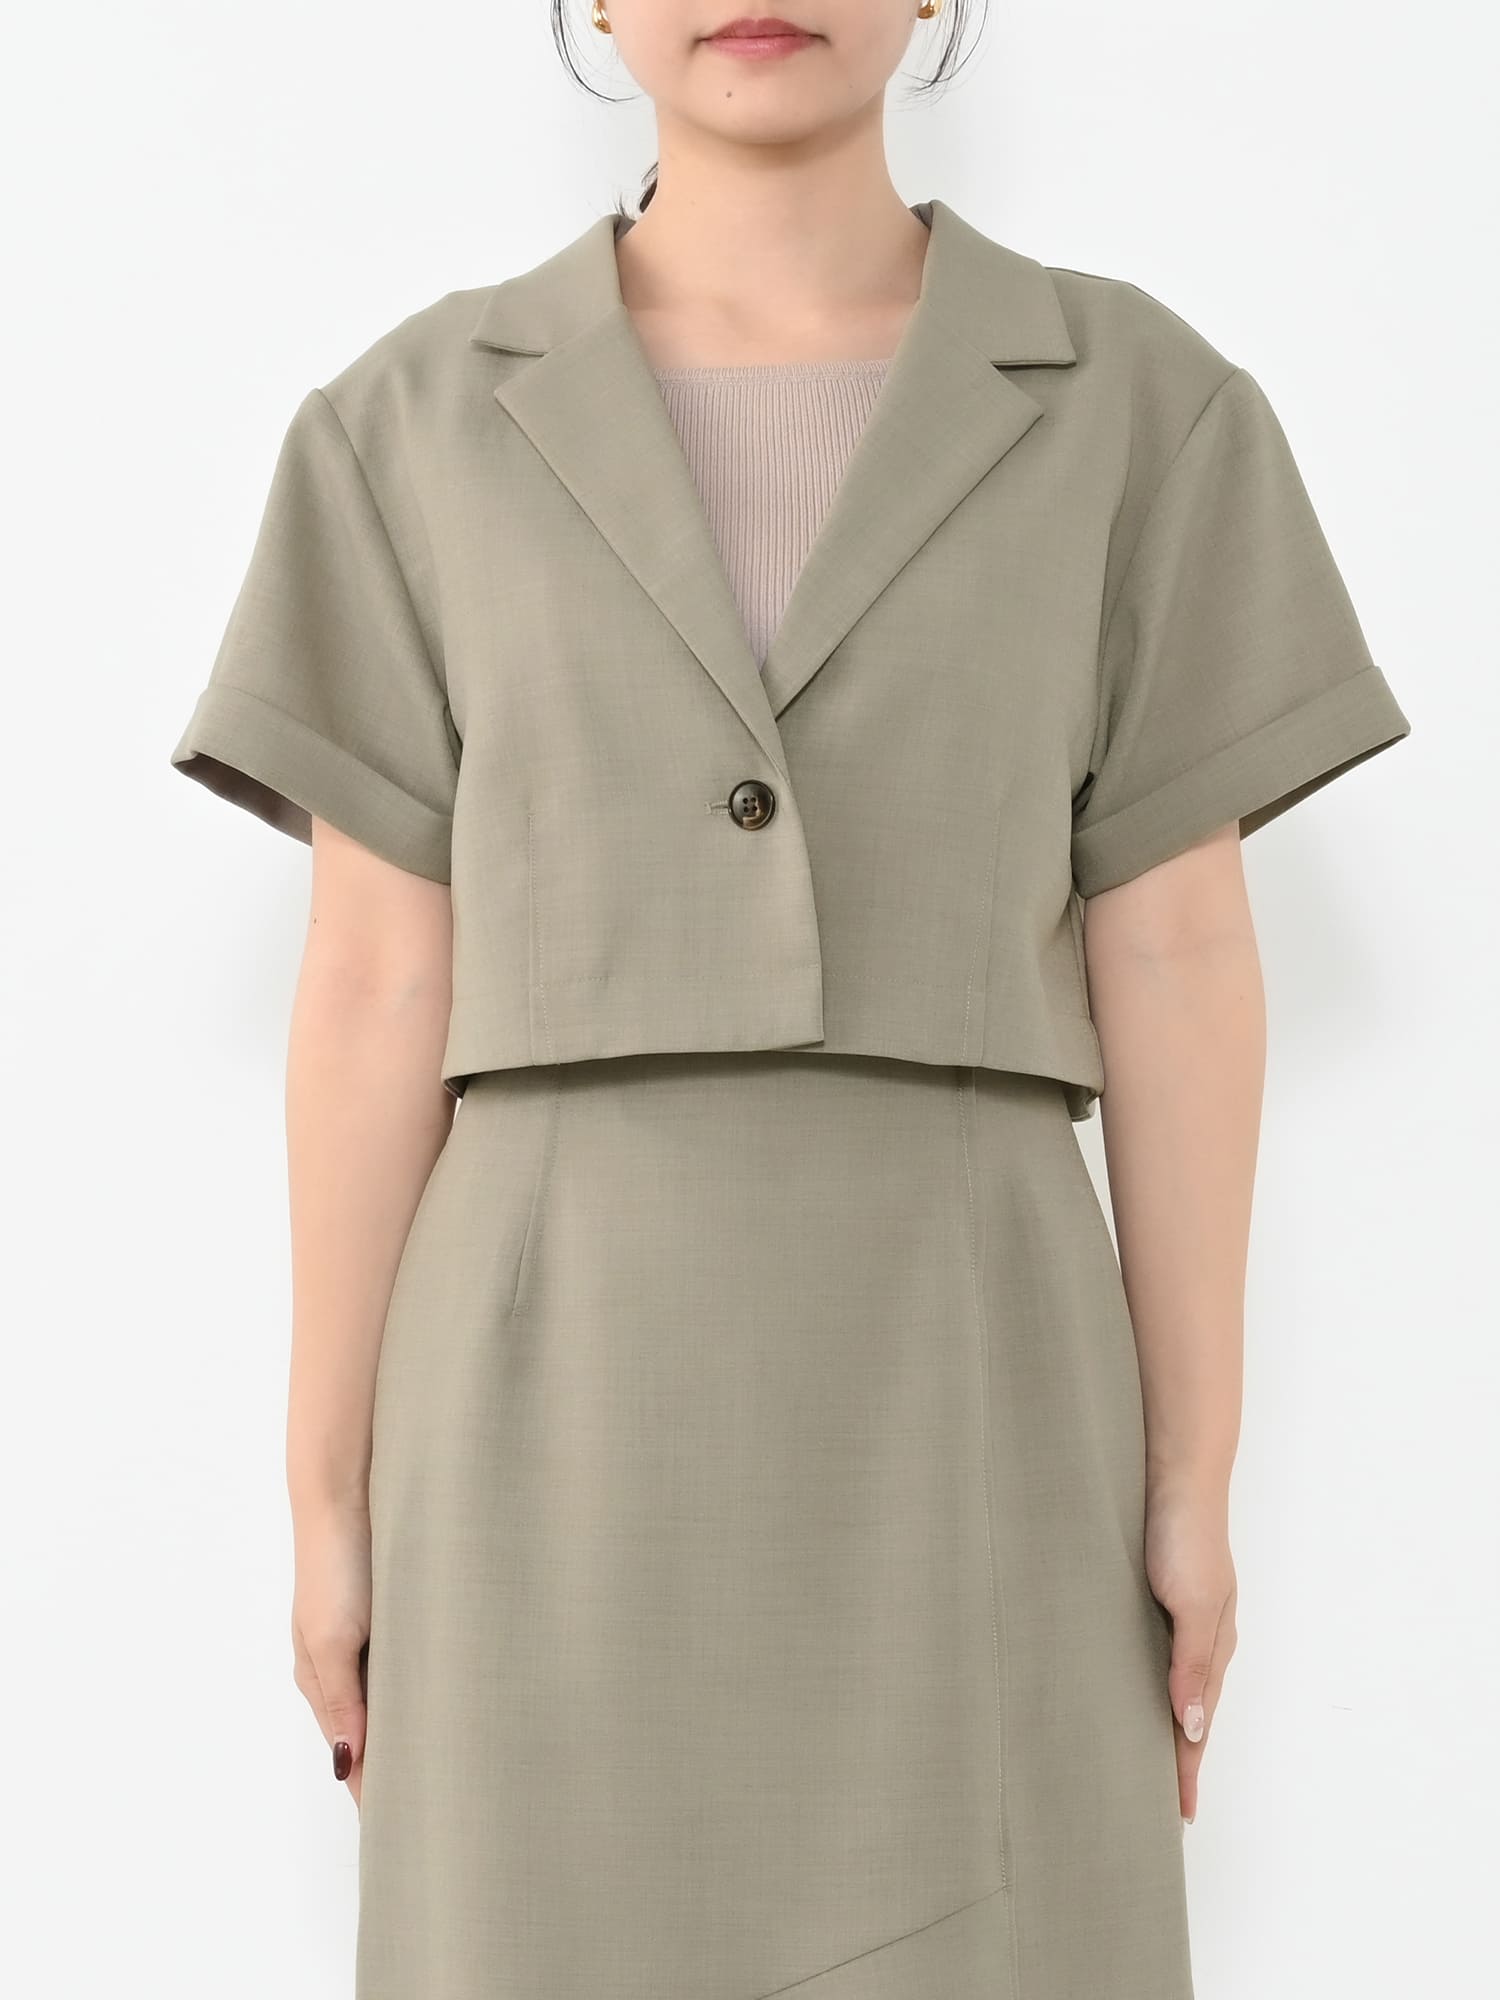 リネンライクショートジャケット | 小柄・低身長女性向けファッション